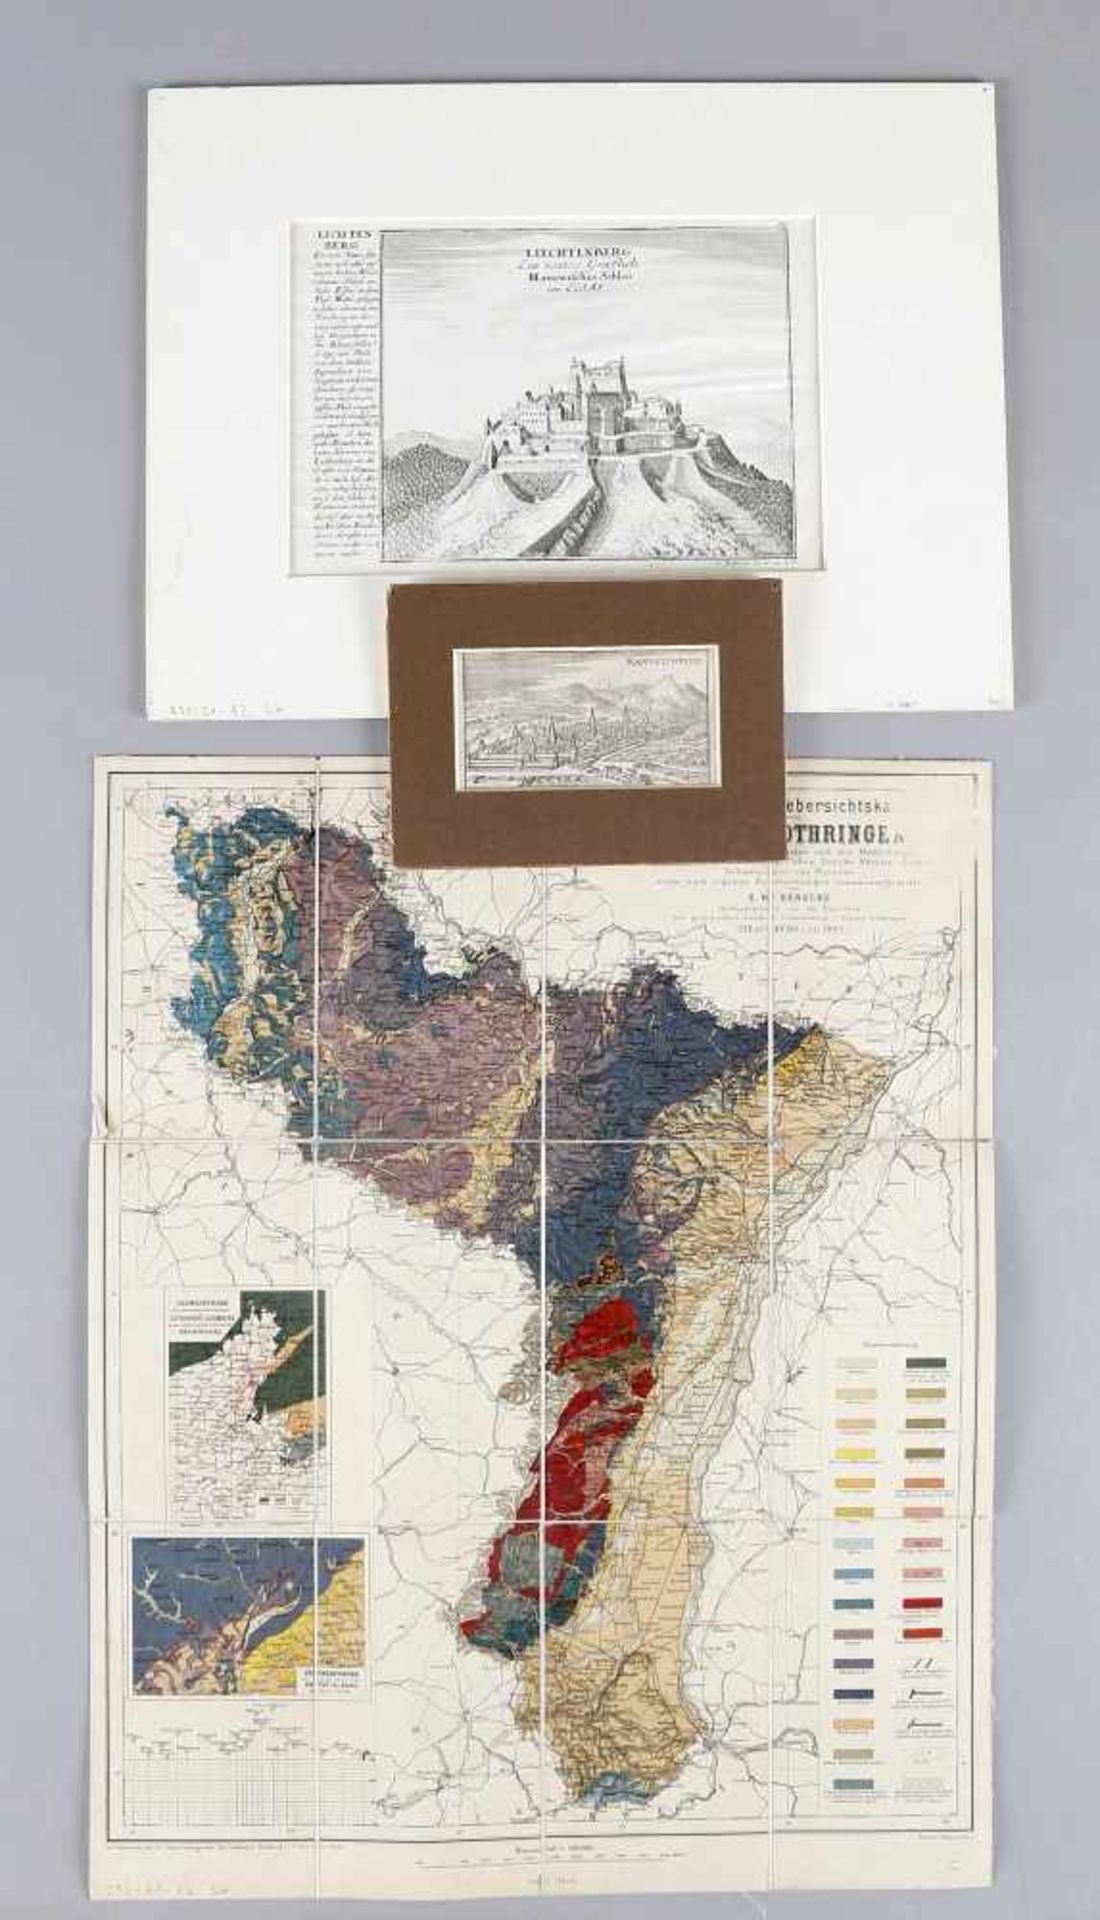 Konvolut aus drei Stichen bzw. Landkarten Ansicht von Rappoltsweyer, Kupferstich von Chr. Riegel, um